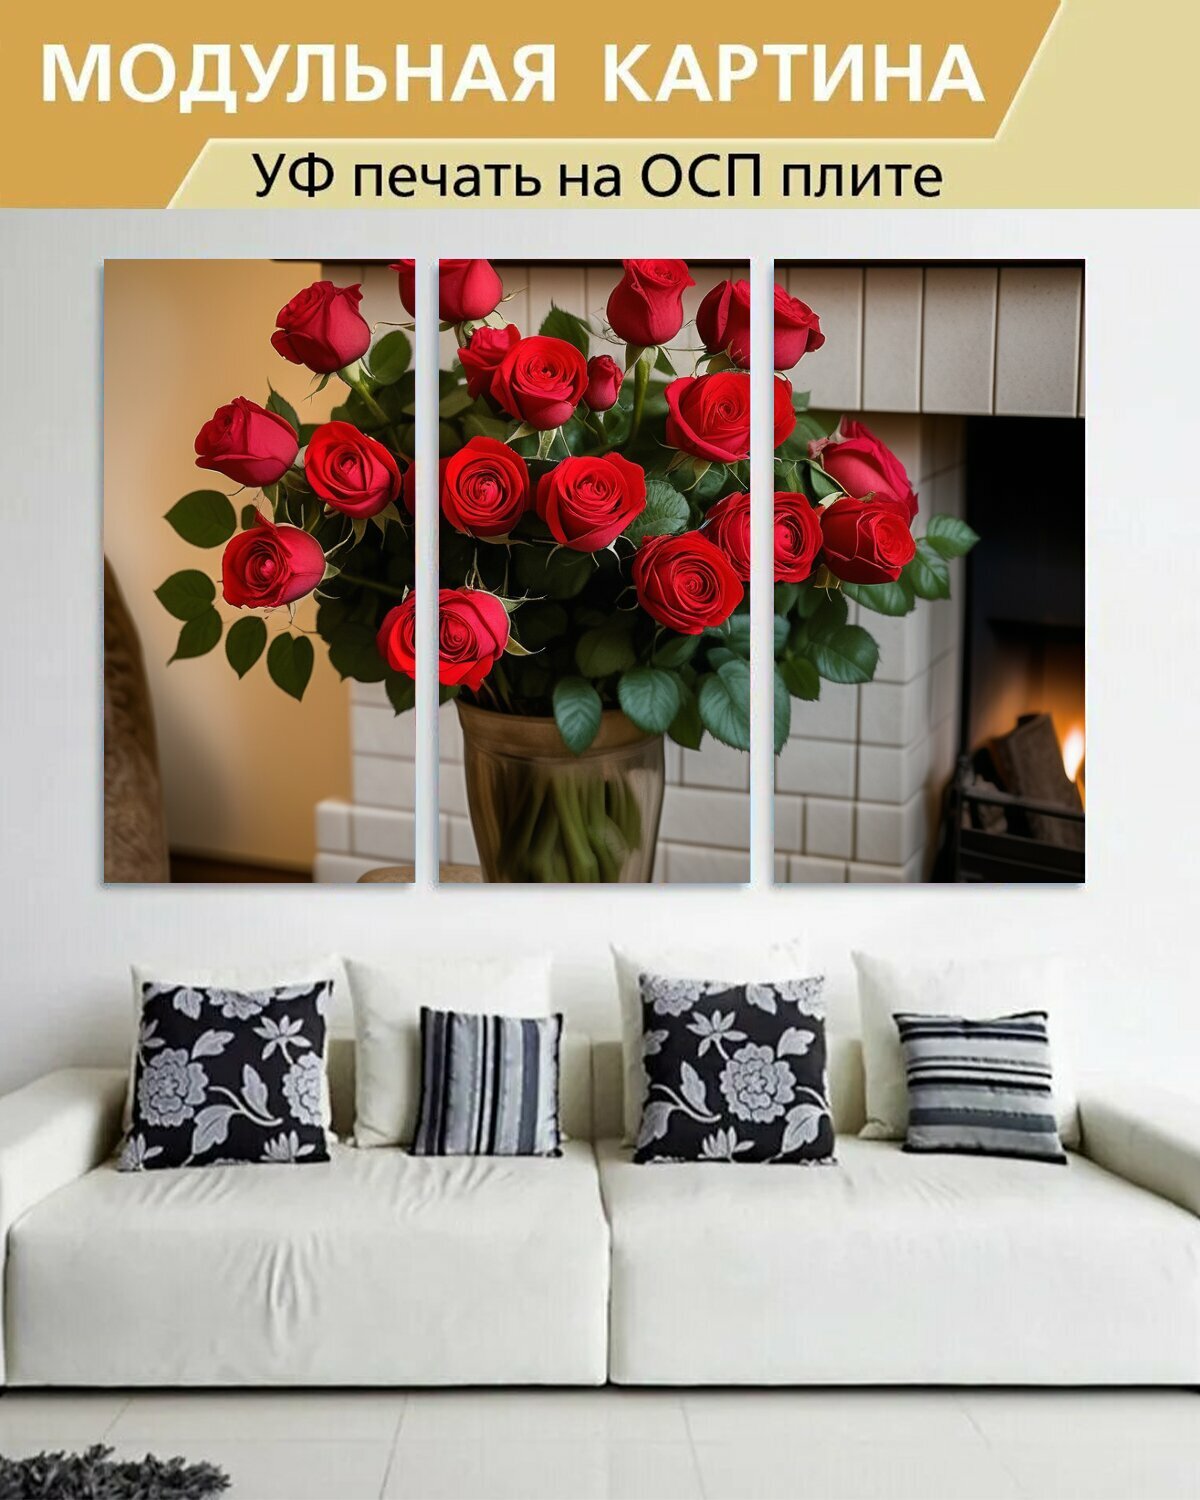 Модульная картина на ОСП любителям природы "Цветы, роза, букет красных роз" 188x125 см. 3 части для интерьера на стену